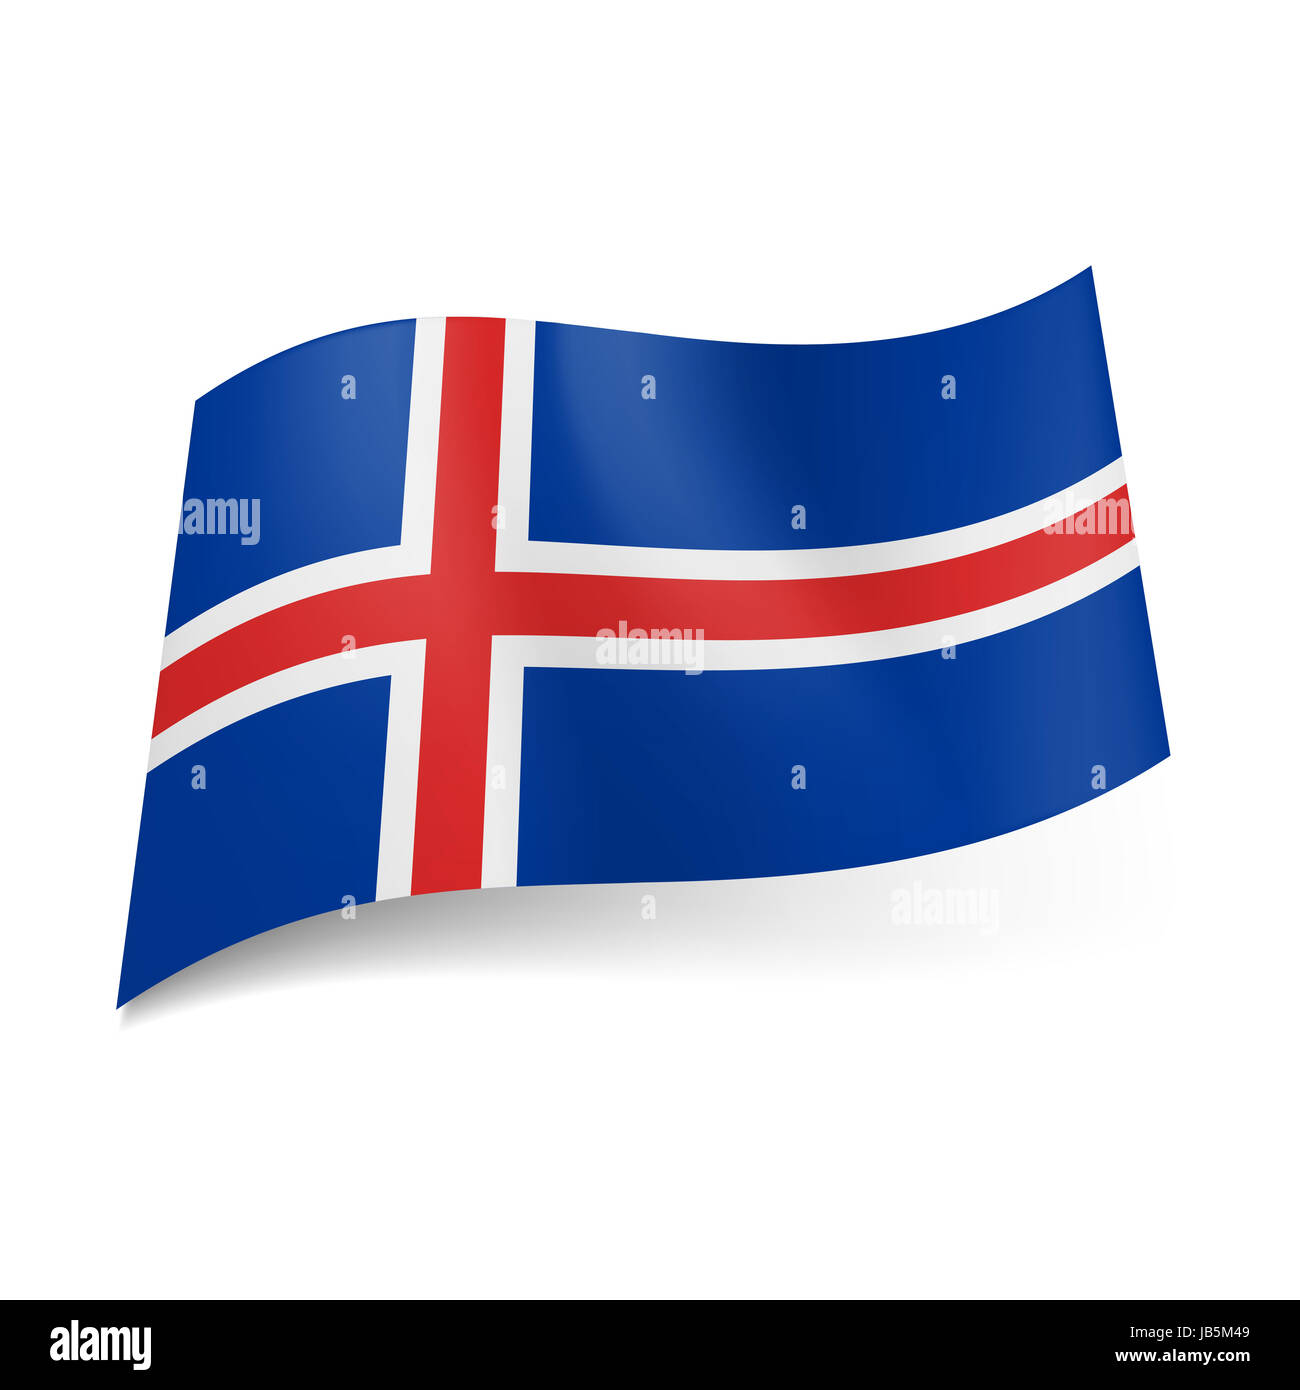 Bandiera nazionale di Islanda: bianco bordato croce rossa su sfondo blu  Foto stock - Alamy